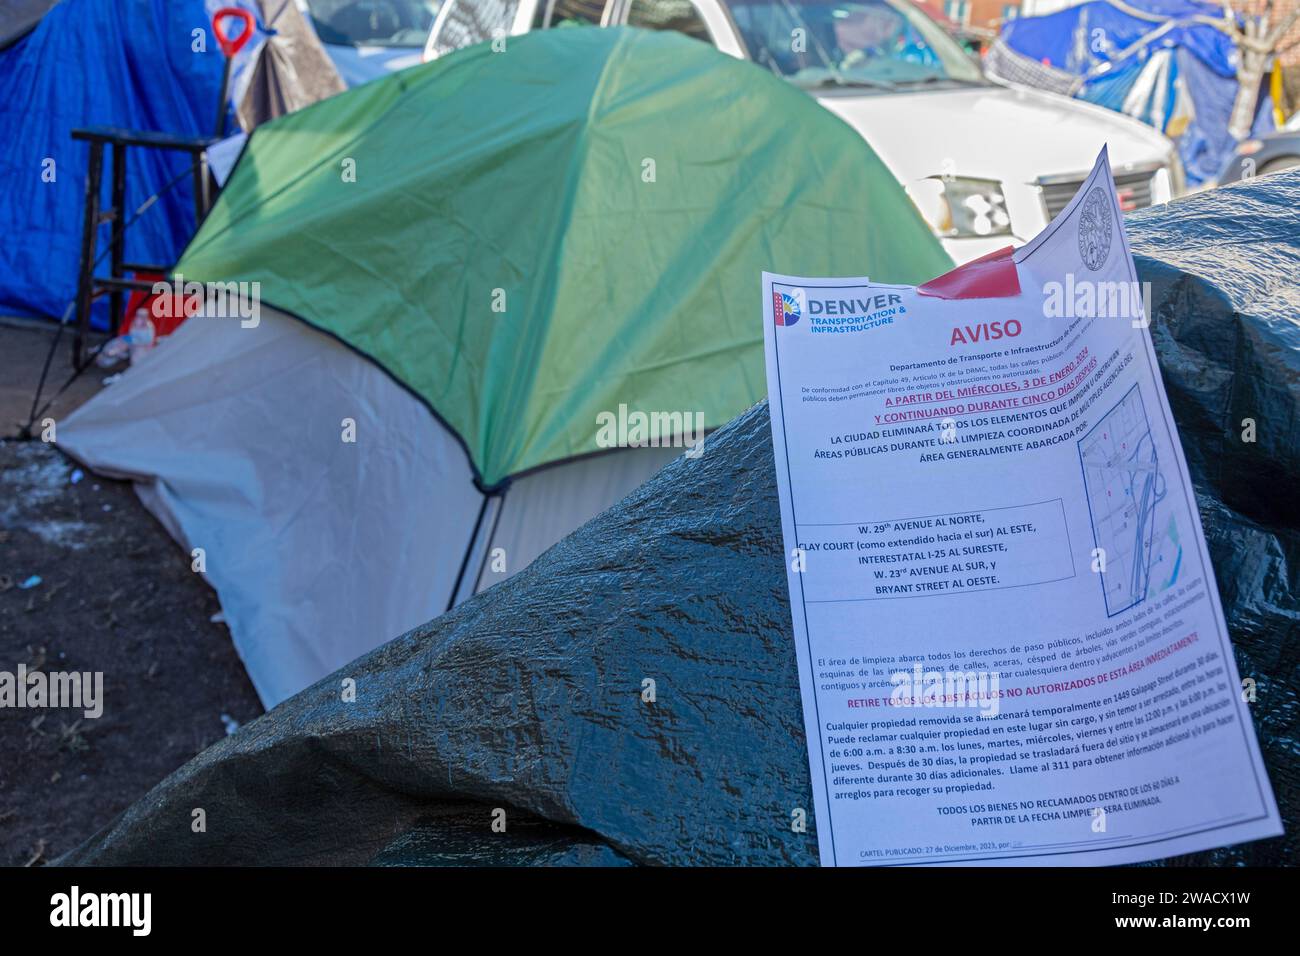 Denver, Colorado - les immigrants, principalement du Venezuela, vivent dans un camp de tentes près du centre-ville de Denver. Des notices placées sur les tentes par la ville avertissent les migrants que cela Banque D'Images